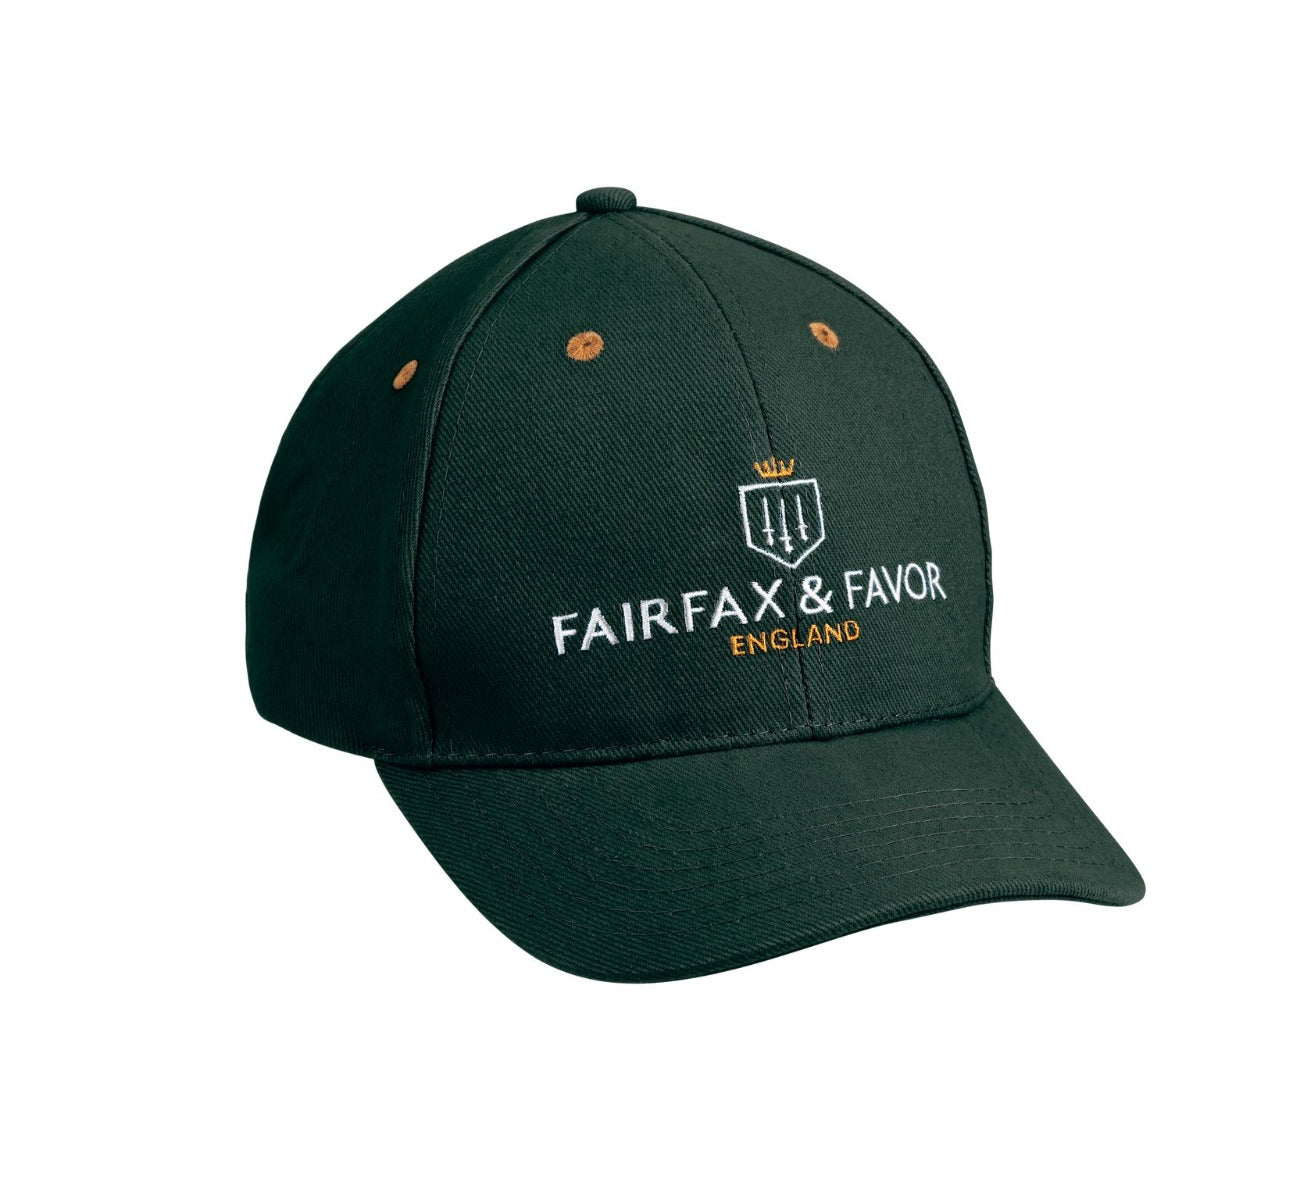 Fairfax & Favor Signature Hat